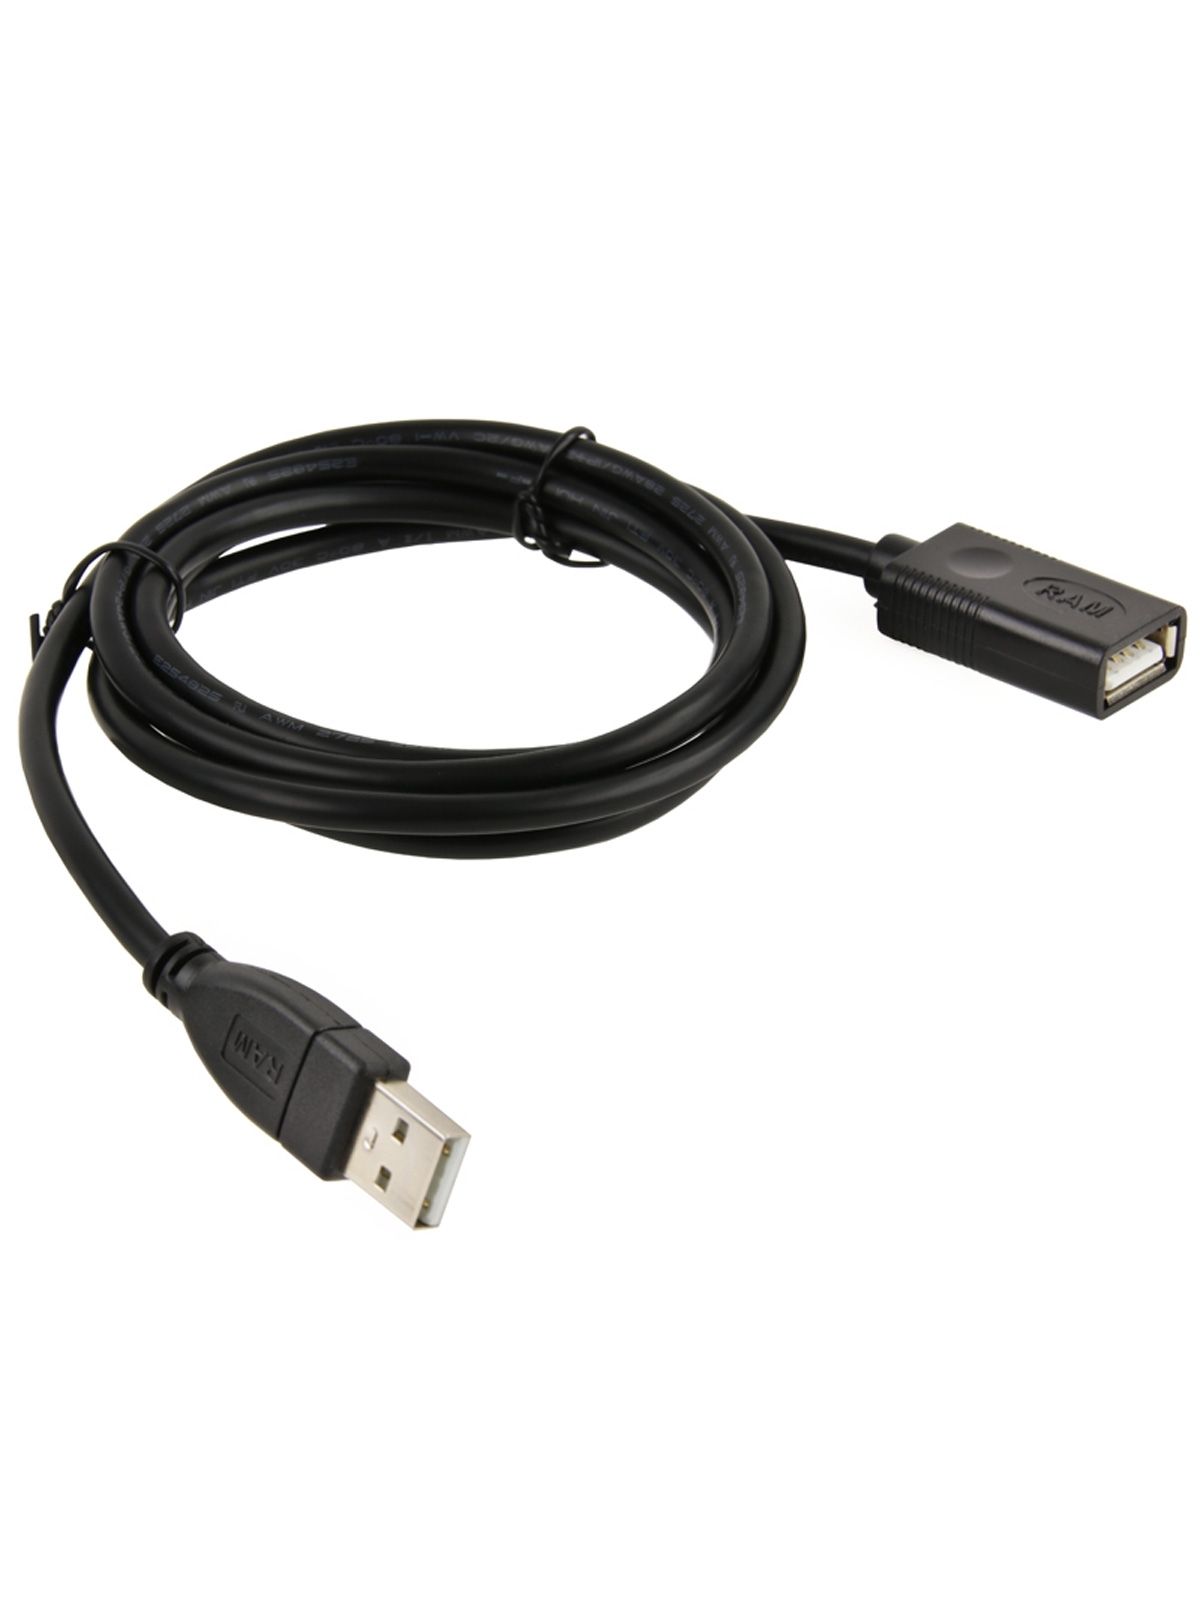 RAM Mounts USB-Verlängerungskabel - Typ A, männlich zu weiblich, ca. 1,2 Meter Kabellänge